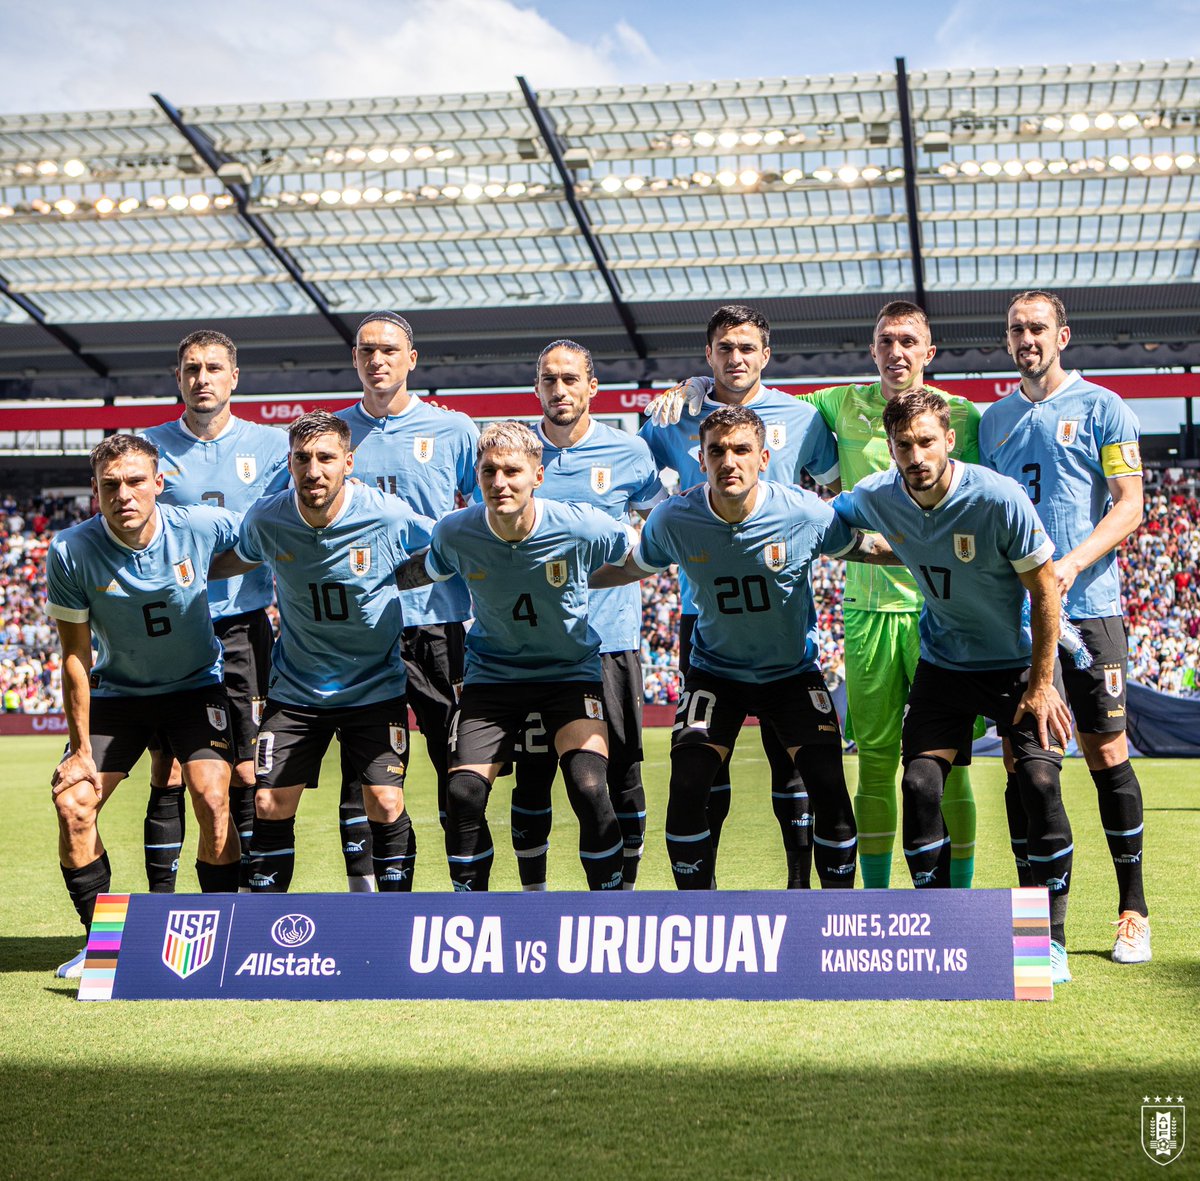 Selección Uruguaya on X: 🎮 𝐅𝐮́𝐭𝐛𝐨𝐥, 𝐚𝐦𝐢𝐠𝐨 #ElEquipoQueNosUne   / X